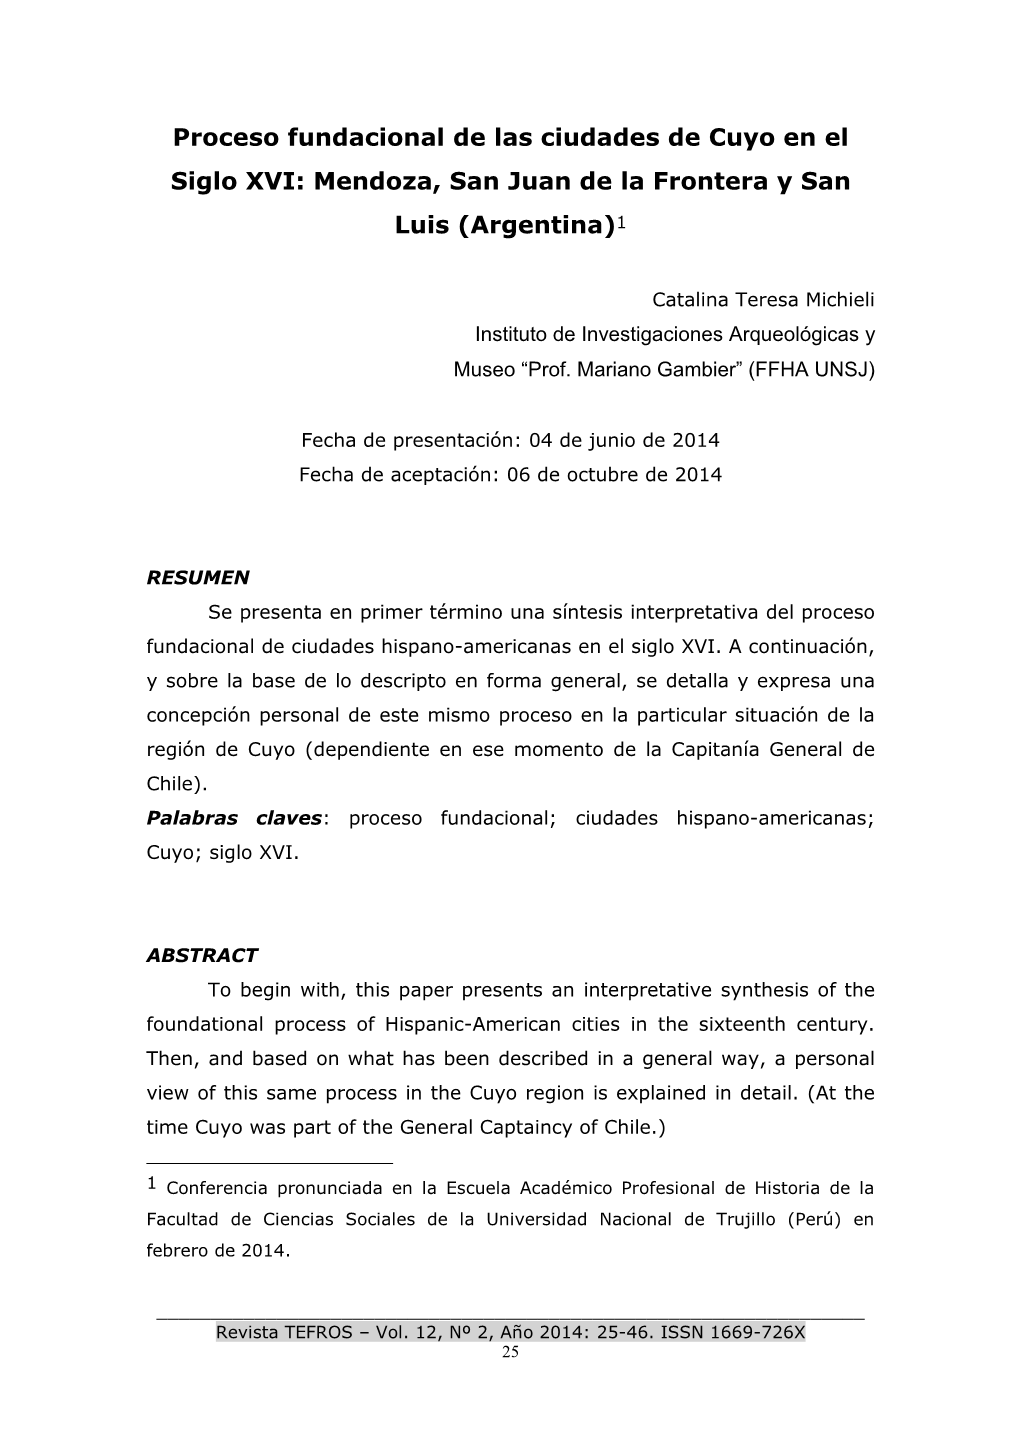 Proceso Fundacional De Las Ciudades De Cuyo En El Siglo XVI: Mendoza, San Juan De La Frontera Y San Luis (Argentina)1